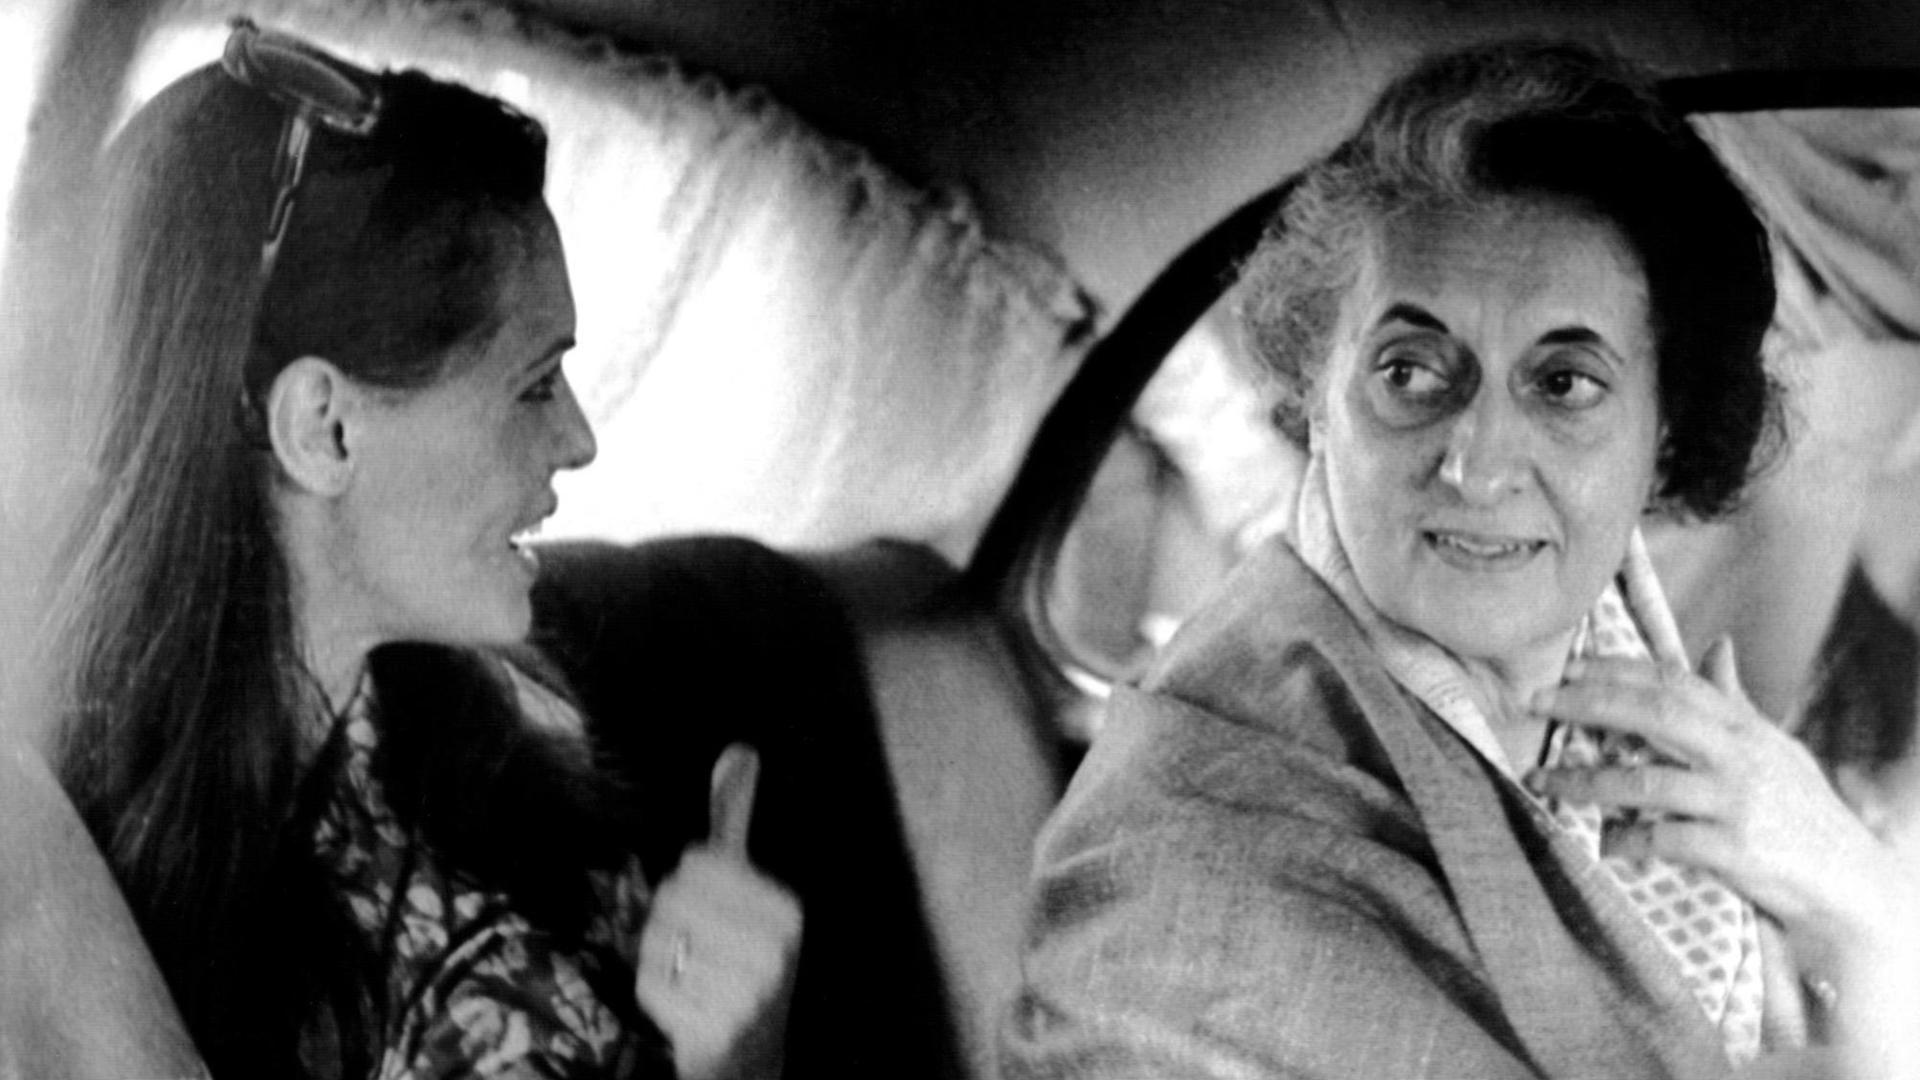 Die ehemalige indische Ministerpräsidentin Indira Gandhi mit ihrer Schwiegertochter Sonia, der italienischen Ehefrau ihres Sohnes Rajiv, auf der Rückbank einer Limousine im Gespräch. (Undatiert)